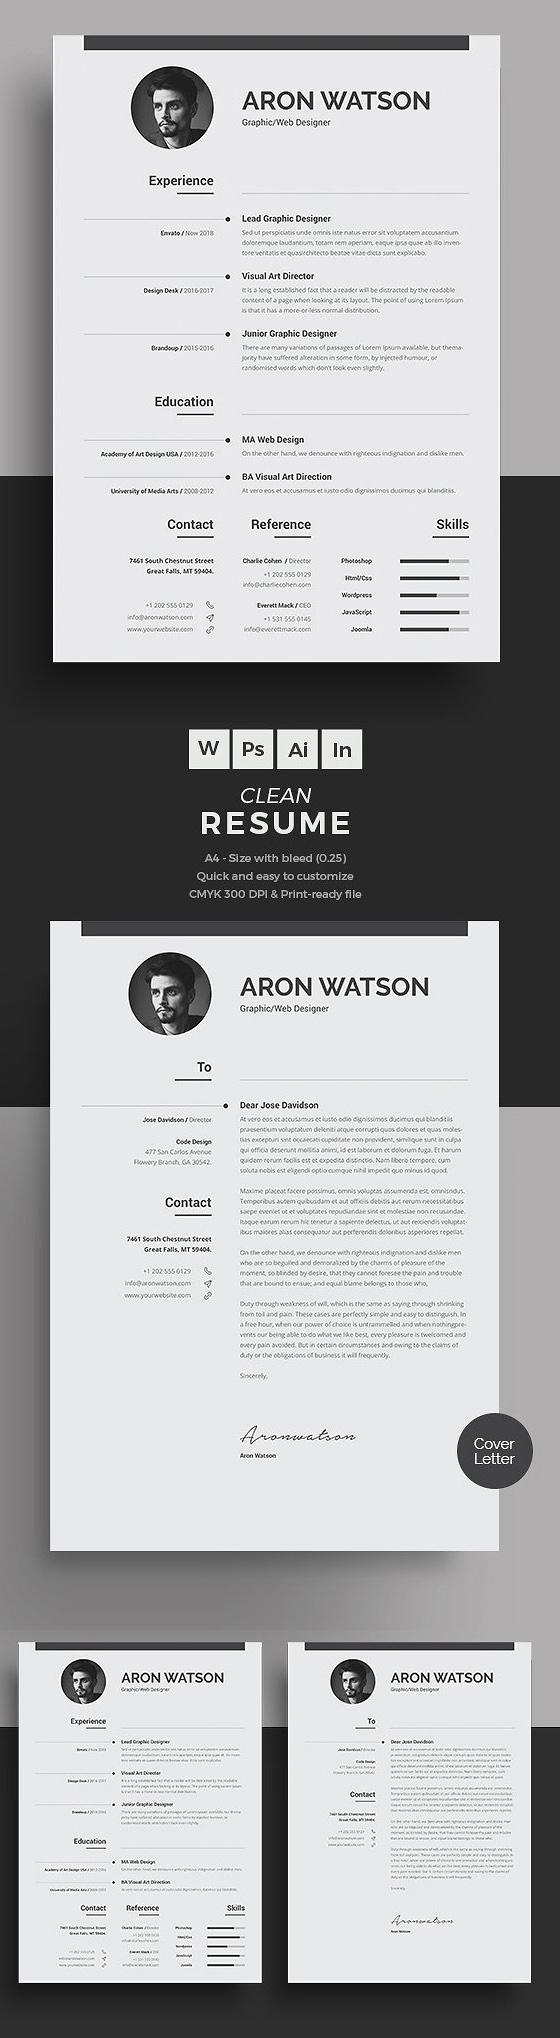 Resume Designs